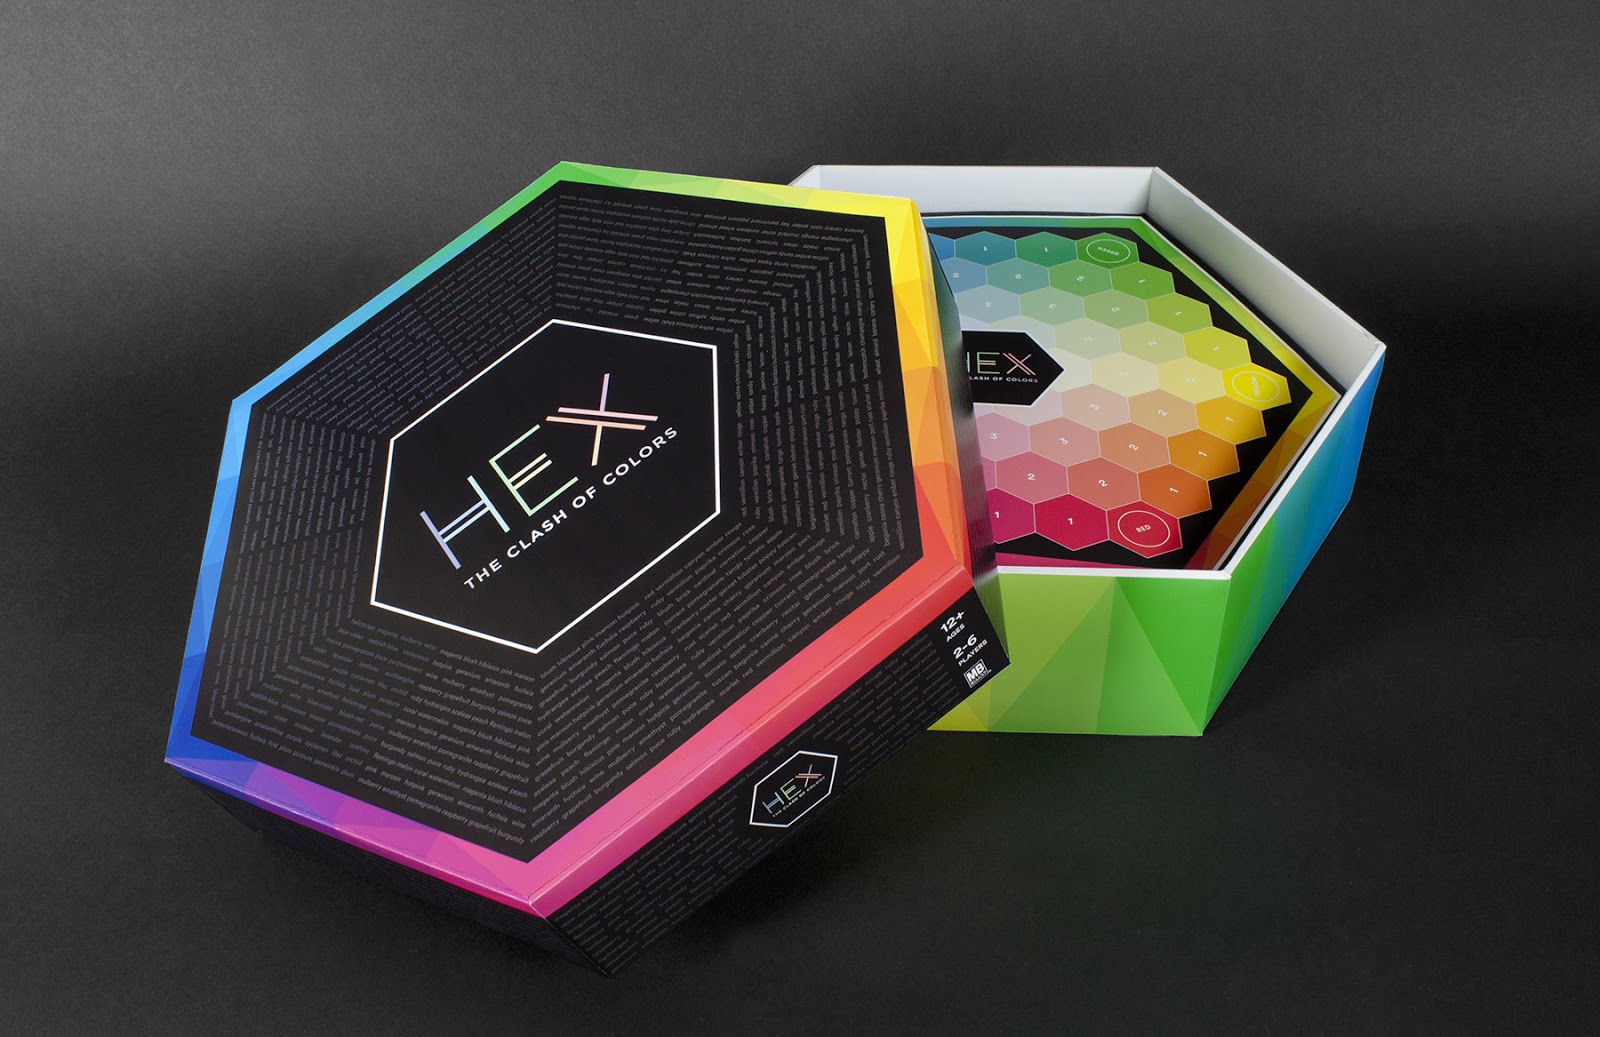 Hex棋盘游戏包装设计